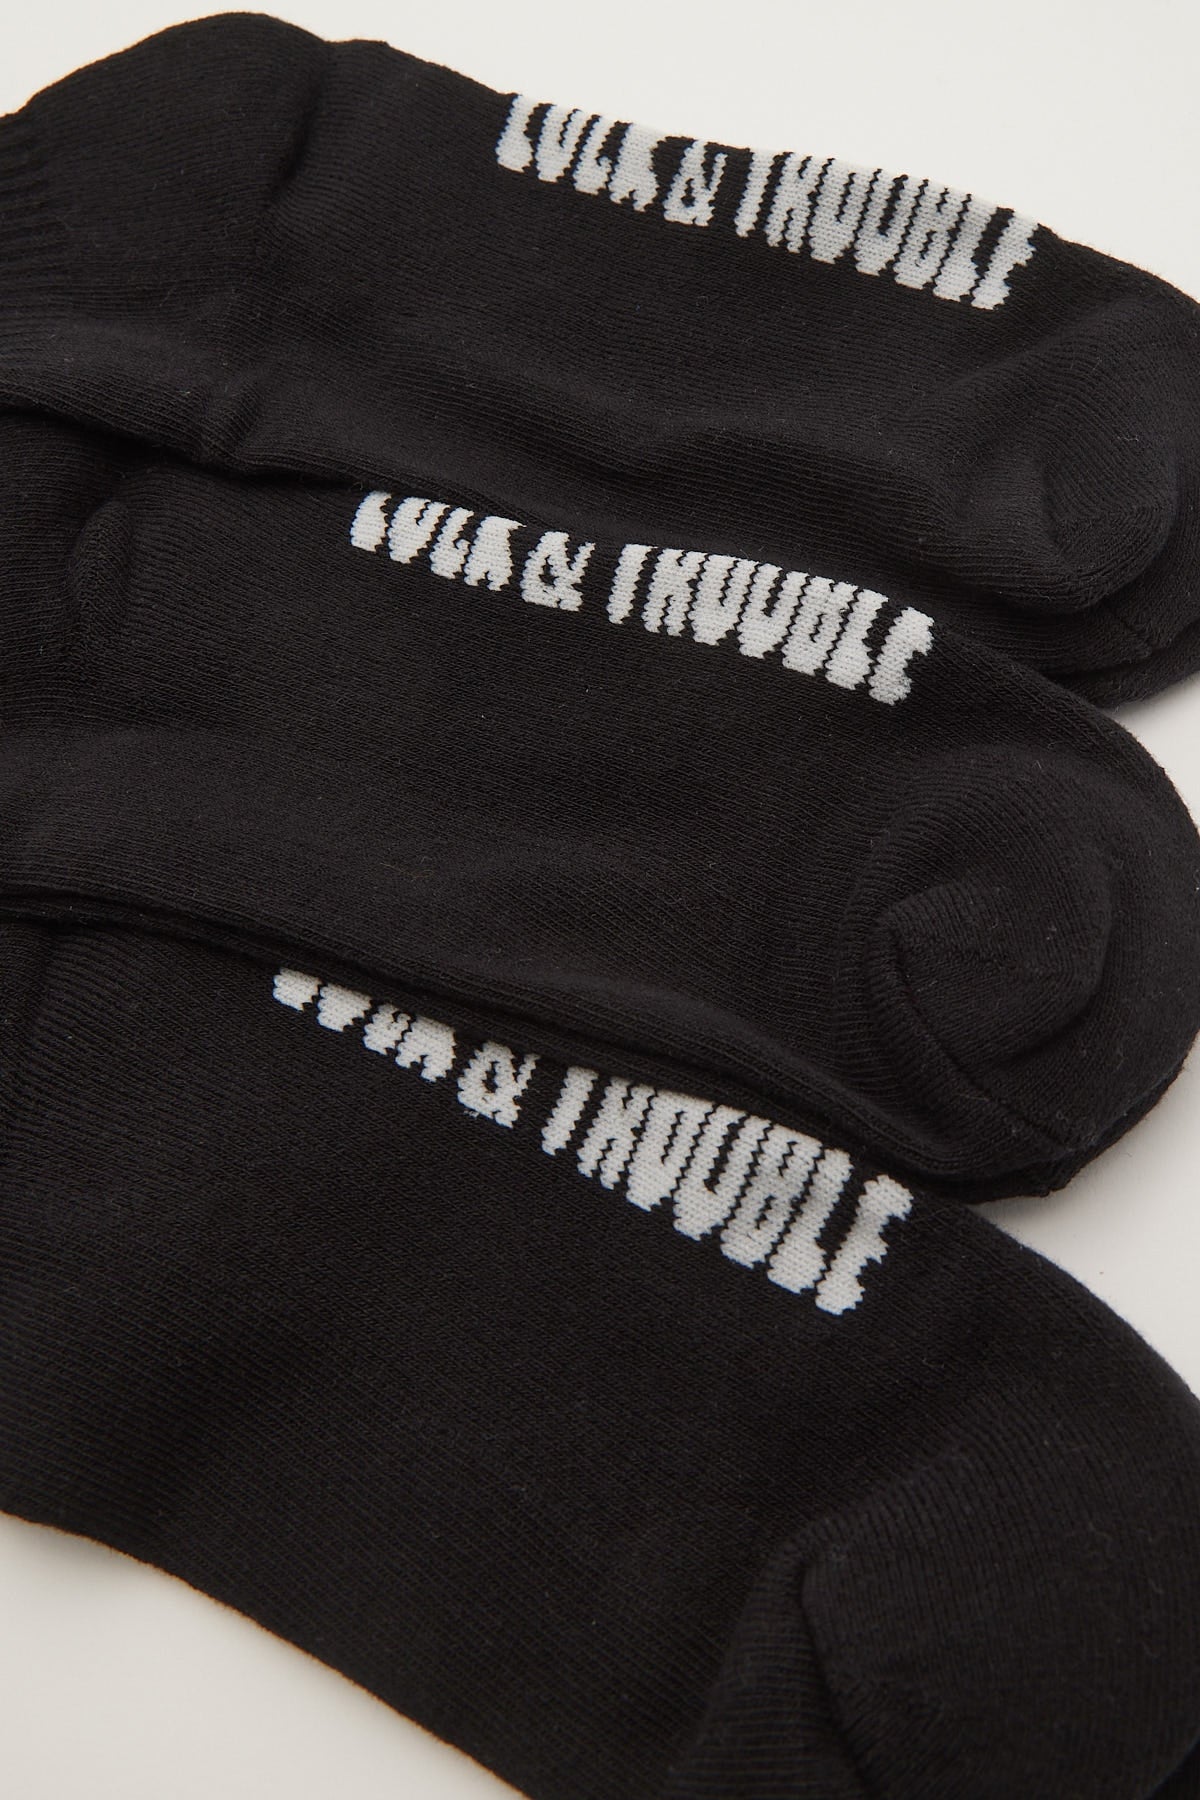 Luck & Trouble Essential Quarter Crew Sock Black